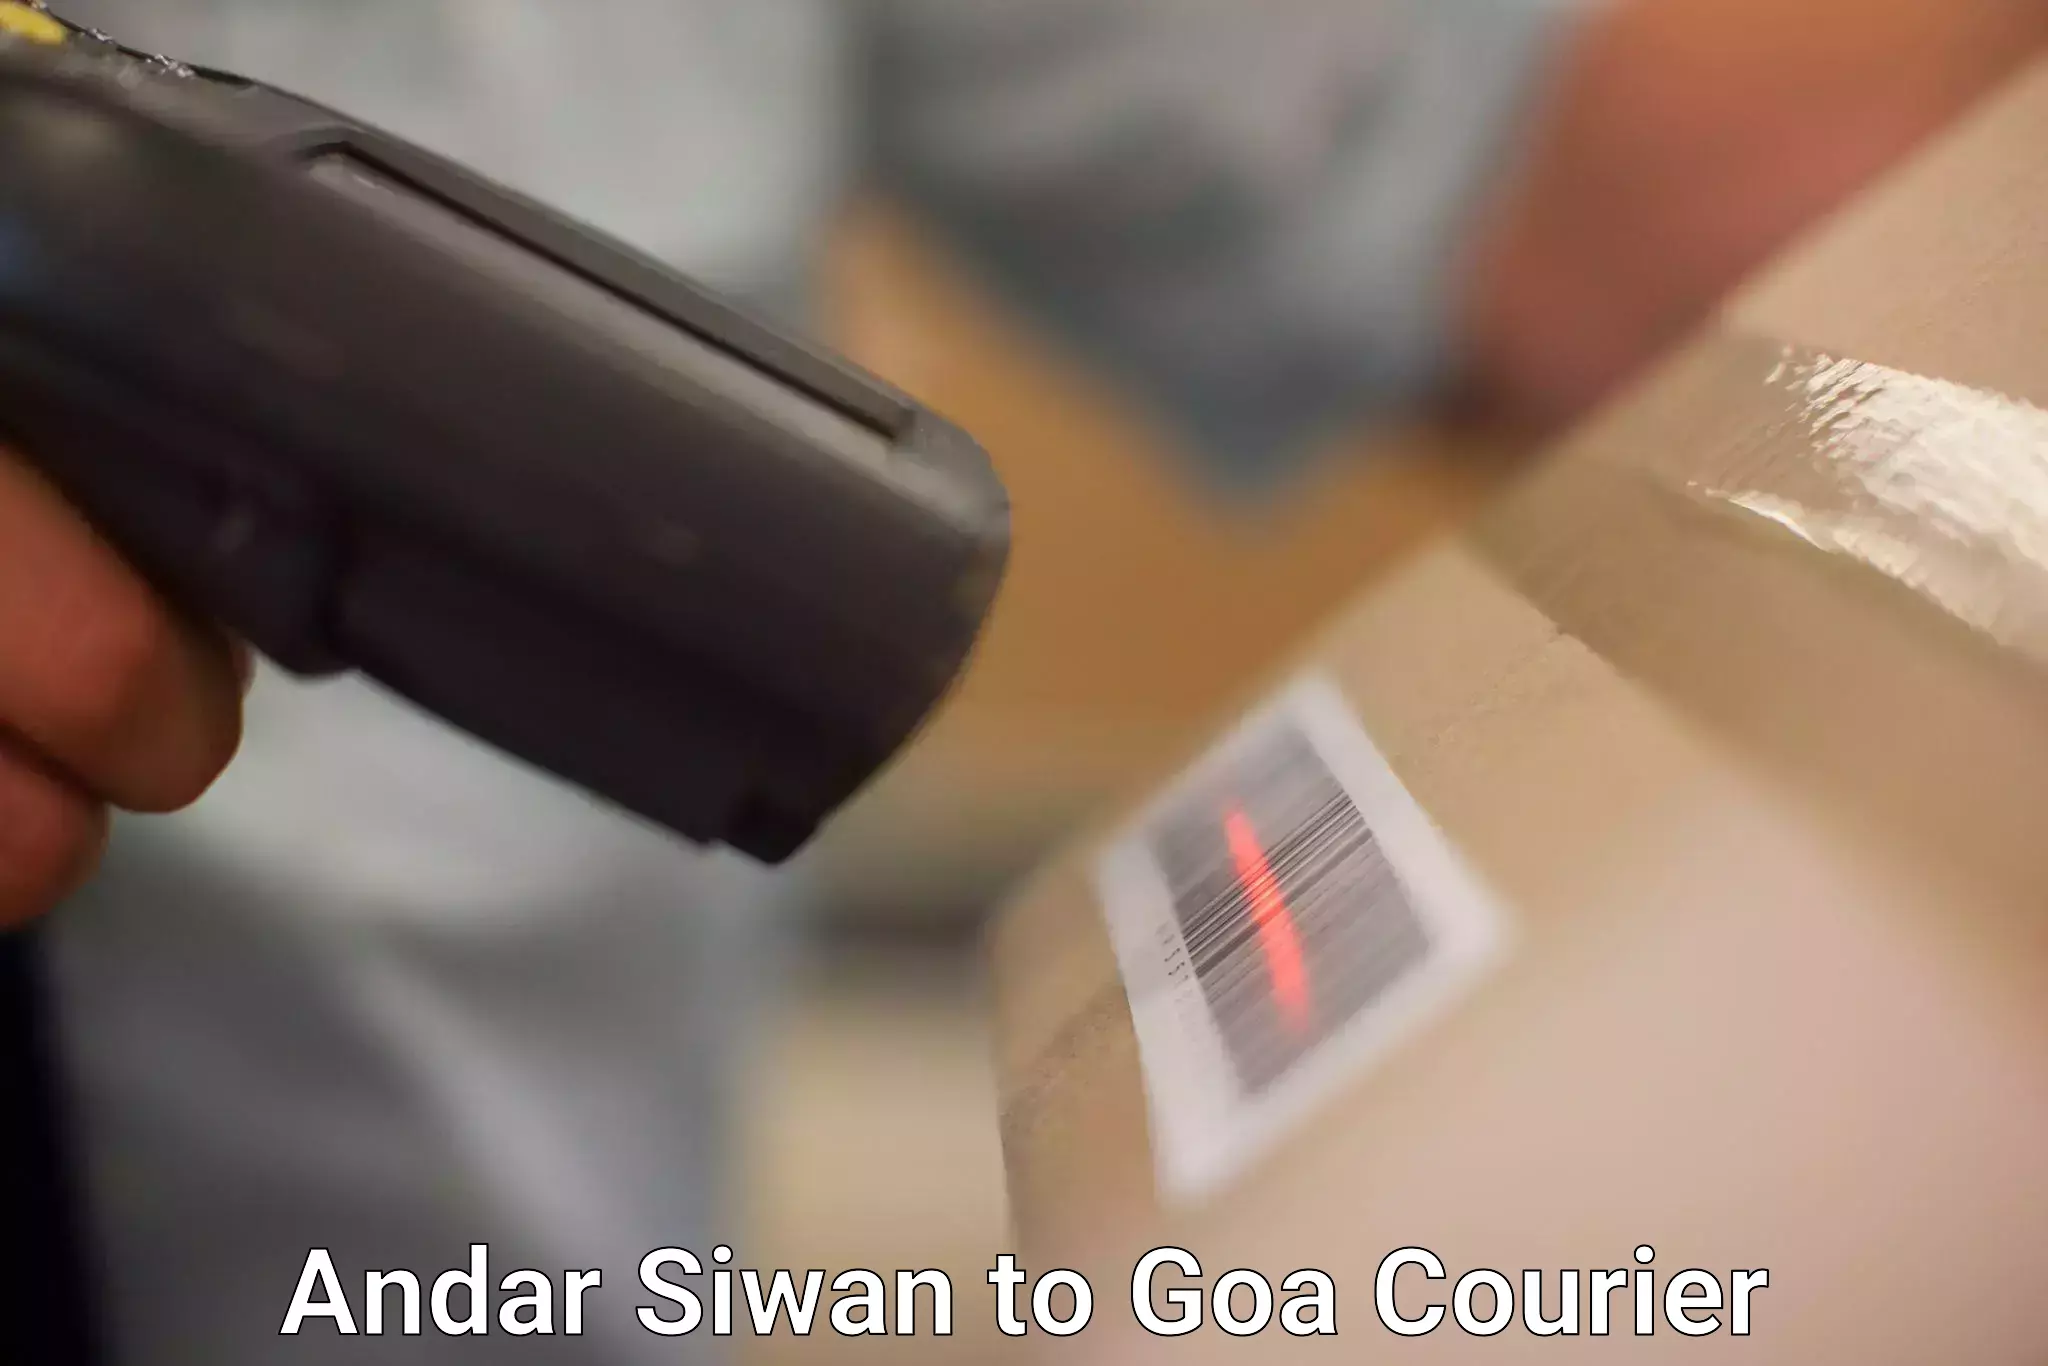 Bulk shipping discounts Andar Siwan to Goa